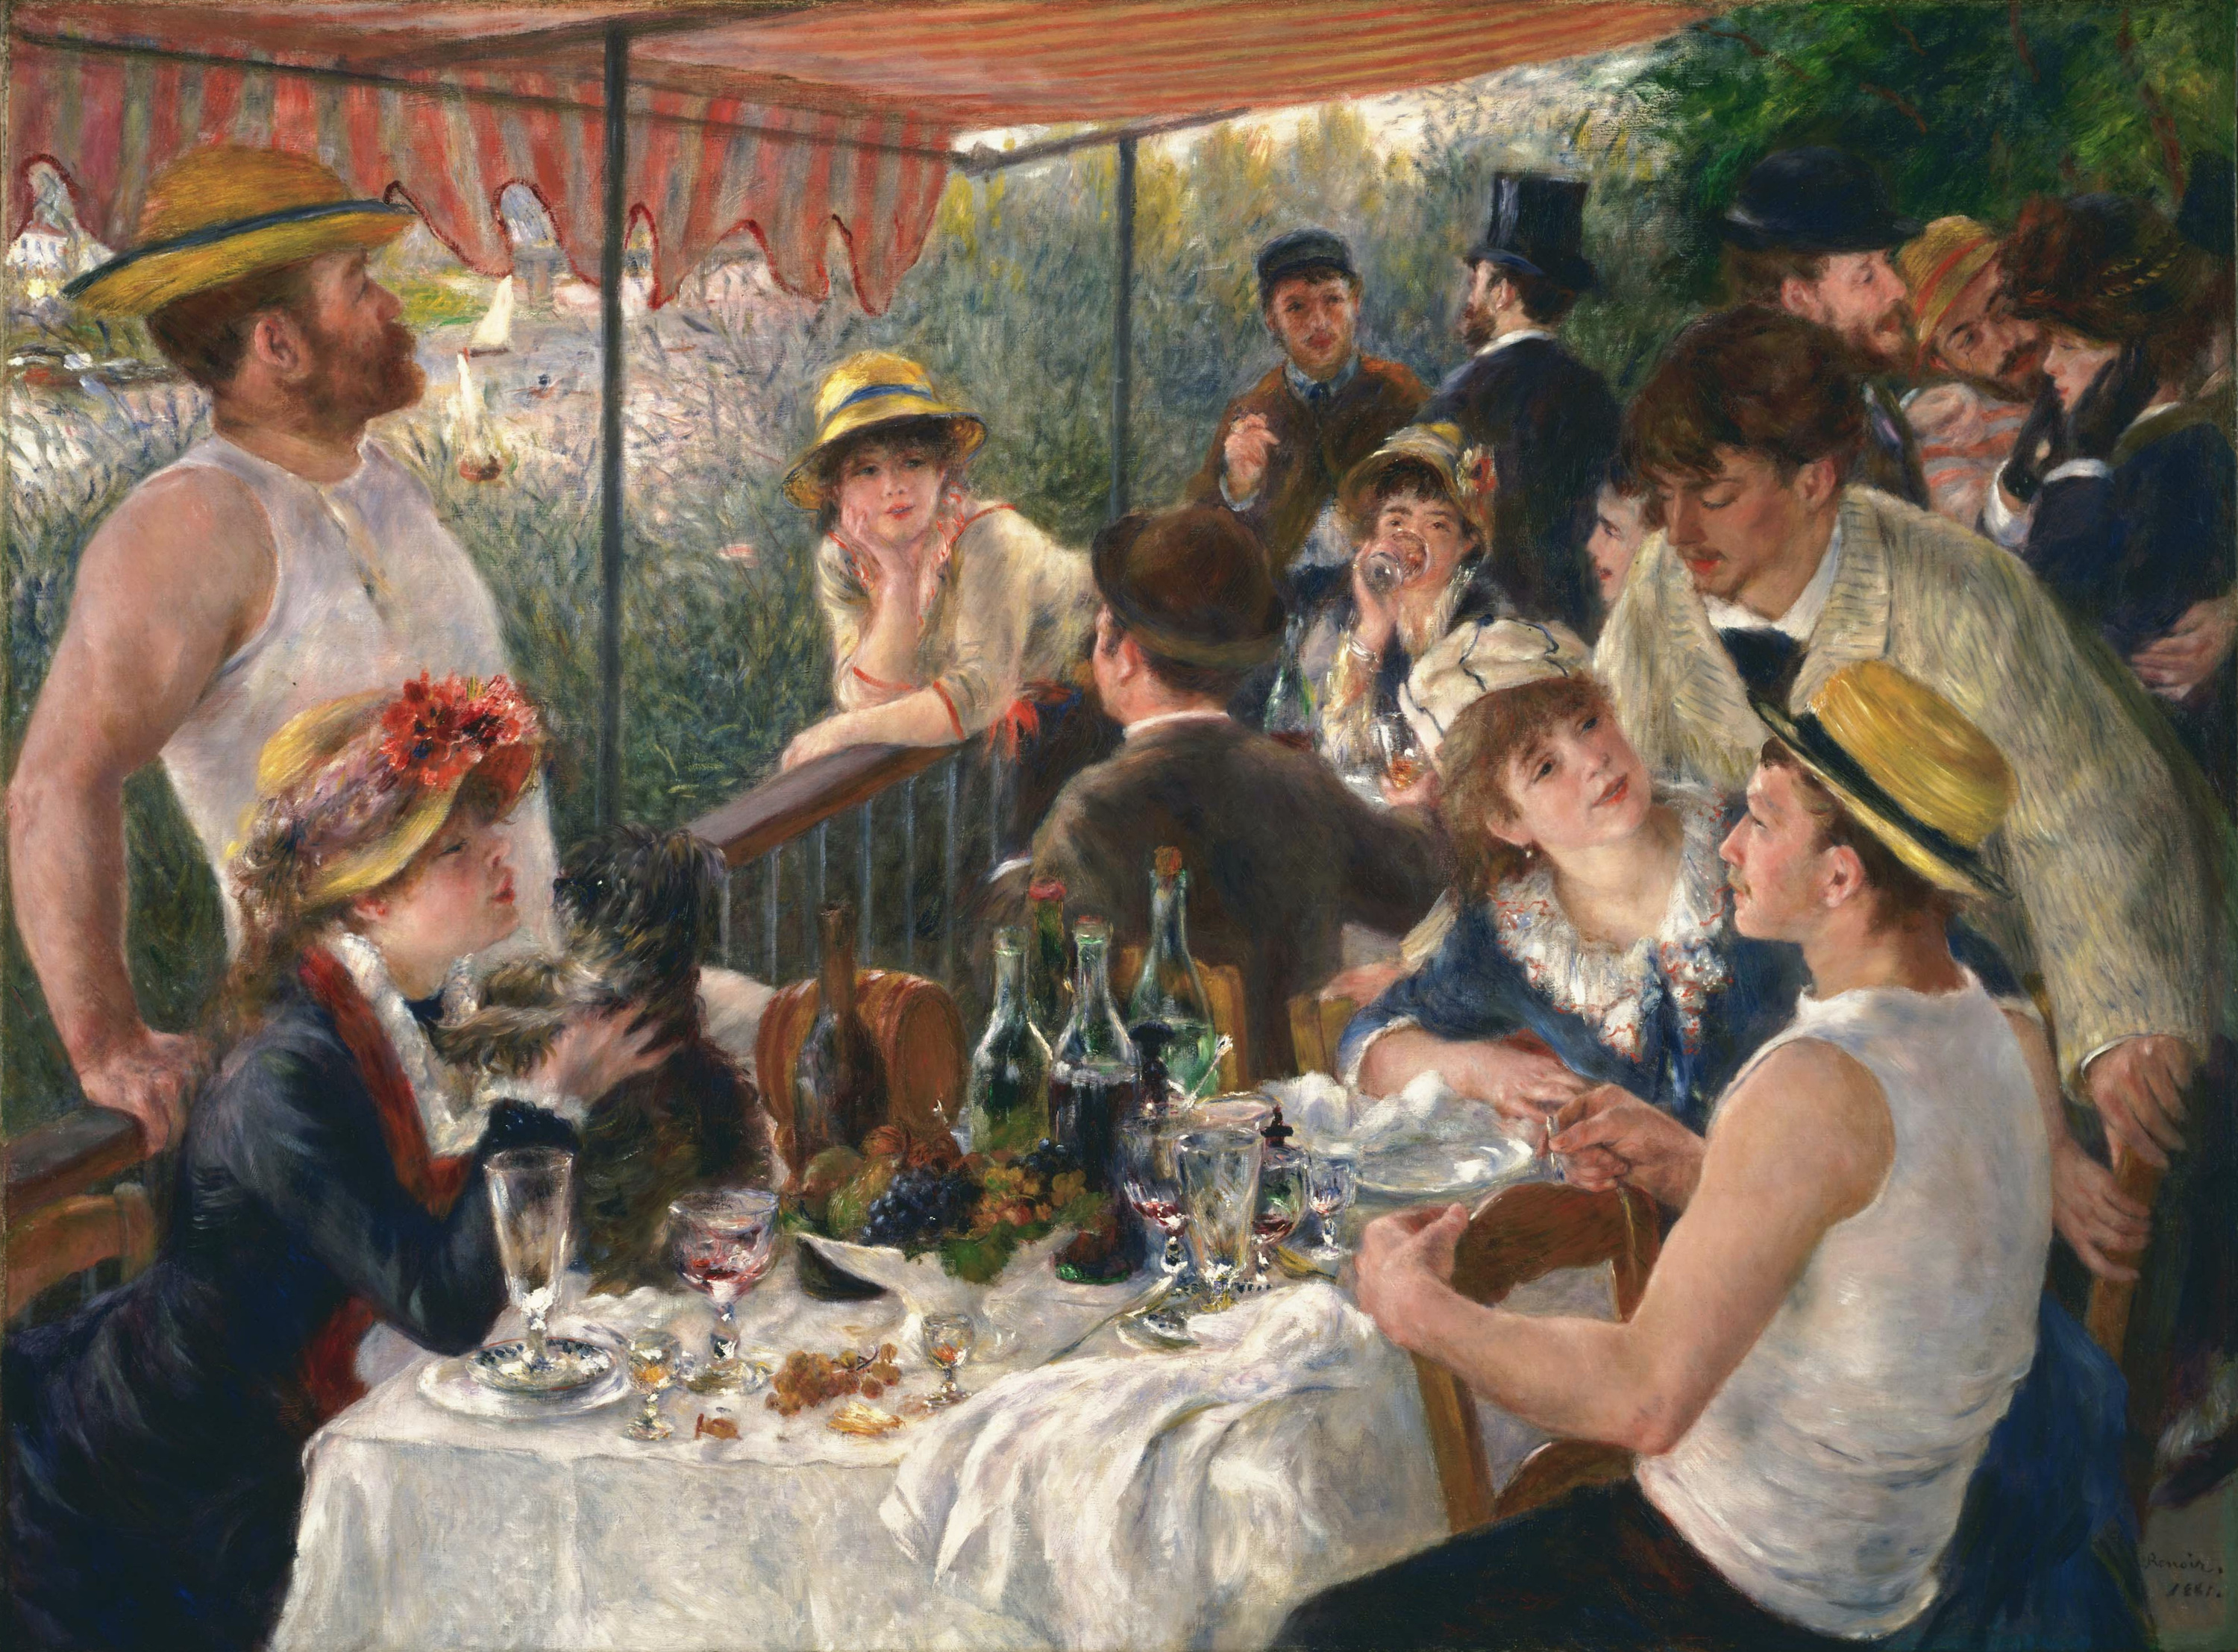 船上的午宴 by 皮埃尔-奥古斯特· 雷诺阿 - 1880-1881年 - 69.13 x 51.25 英寸 